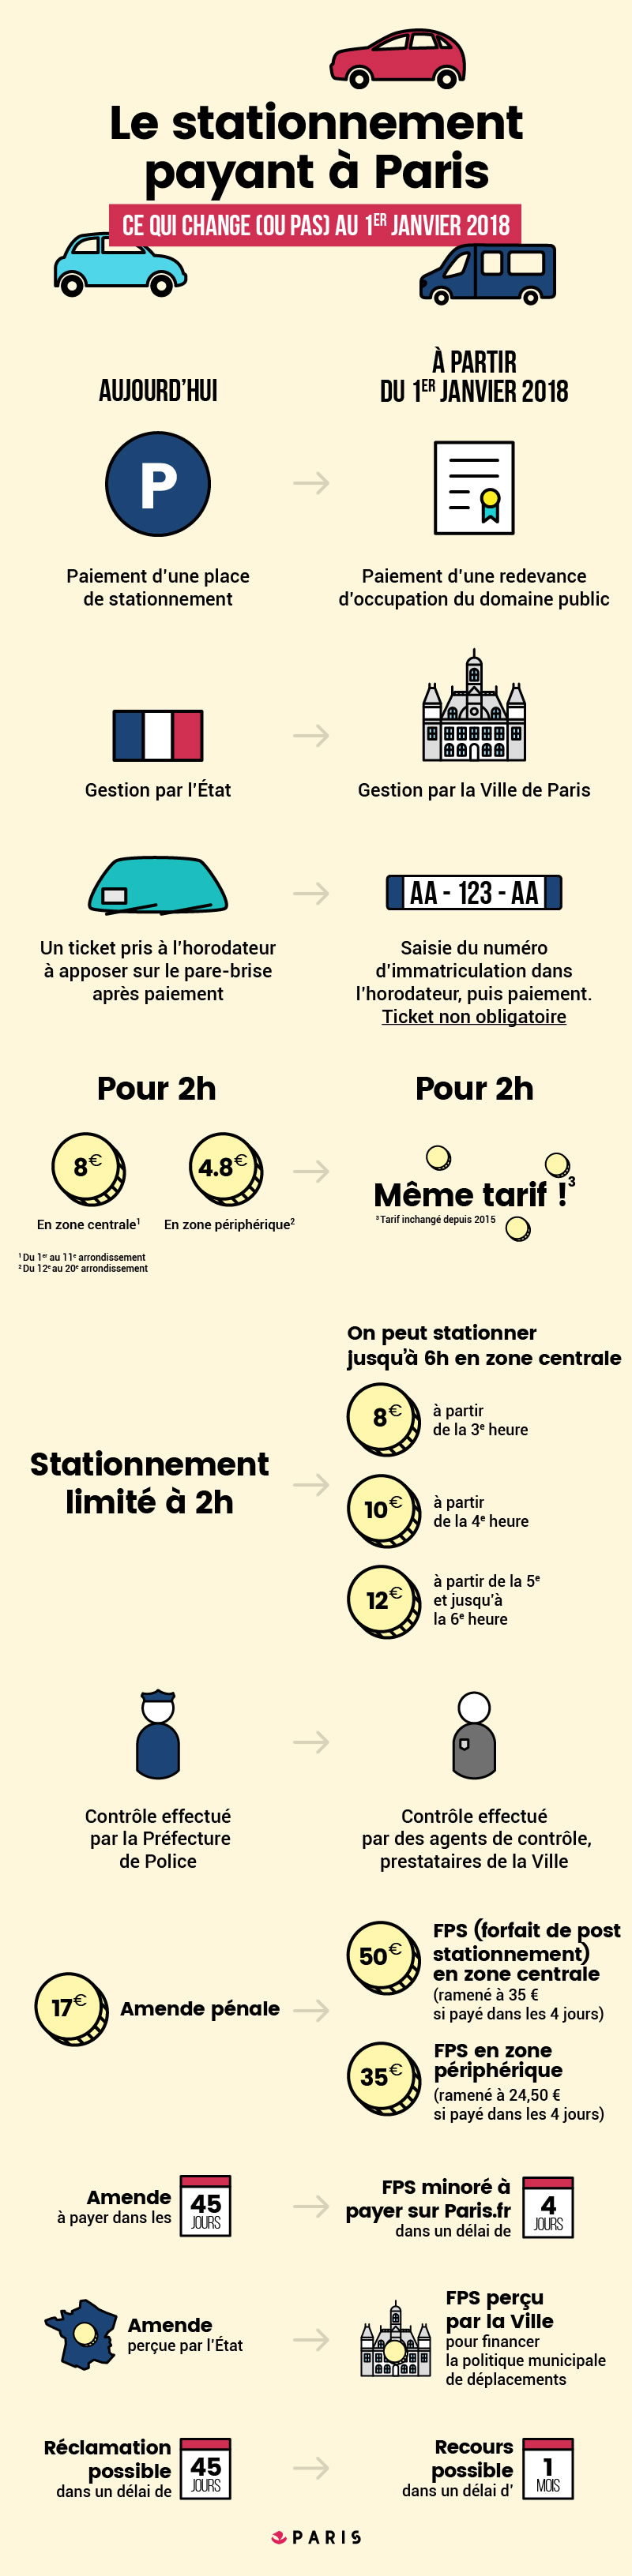 Le stationnement se réforme pour améliorer les services aux Parisiens  Infographie